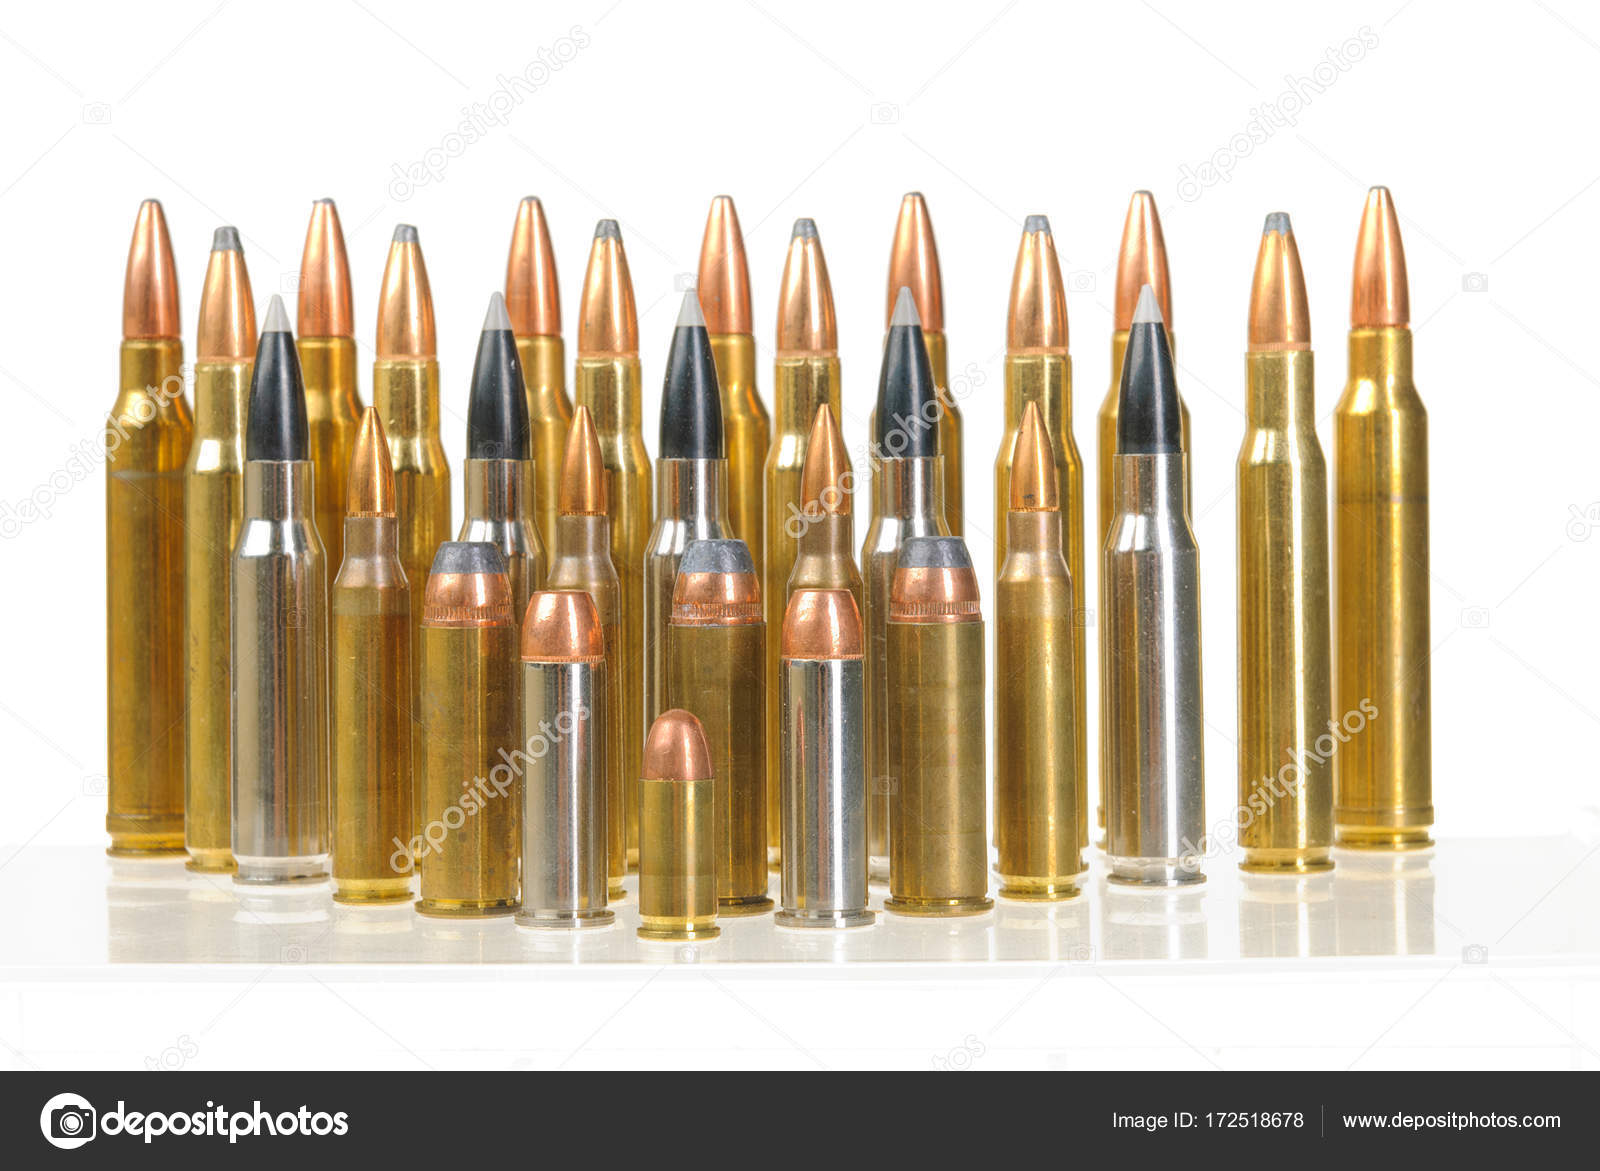 ammunition sizes